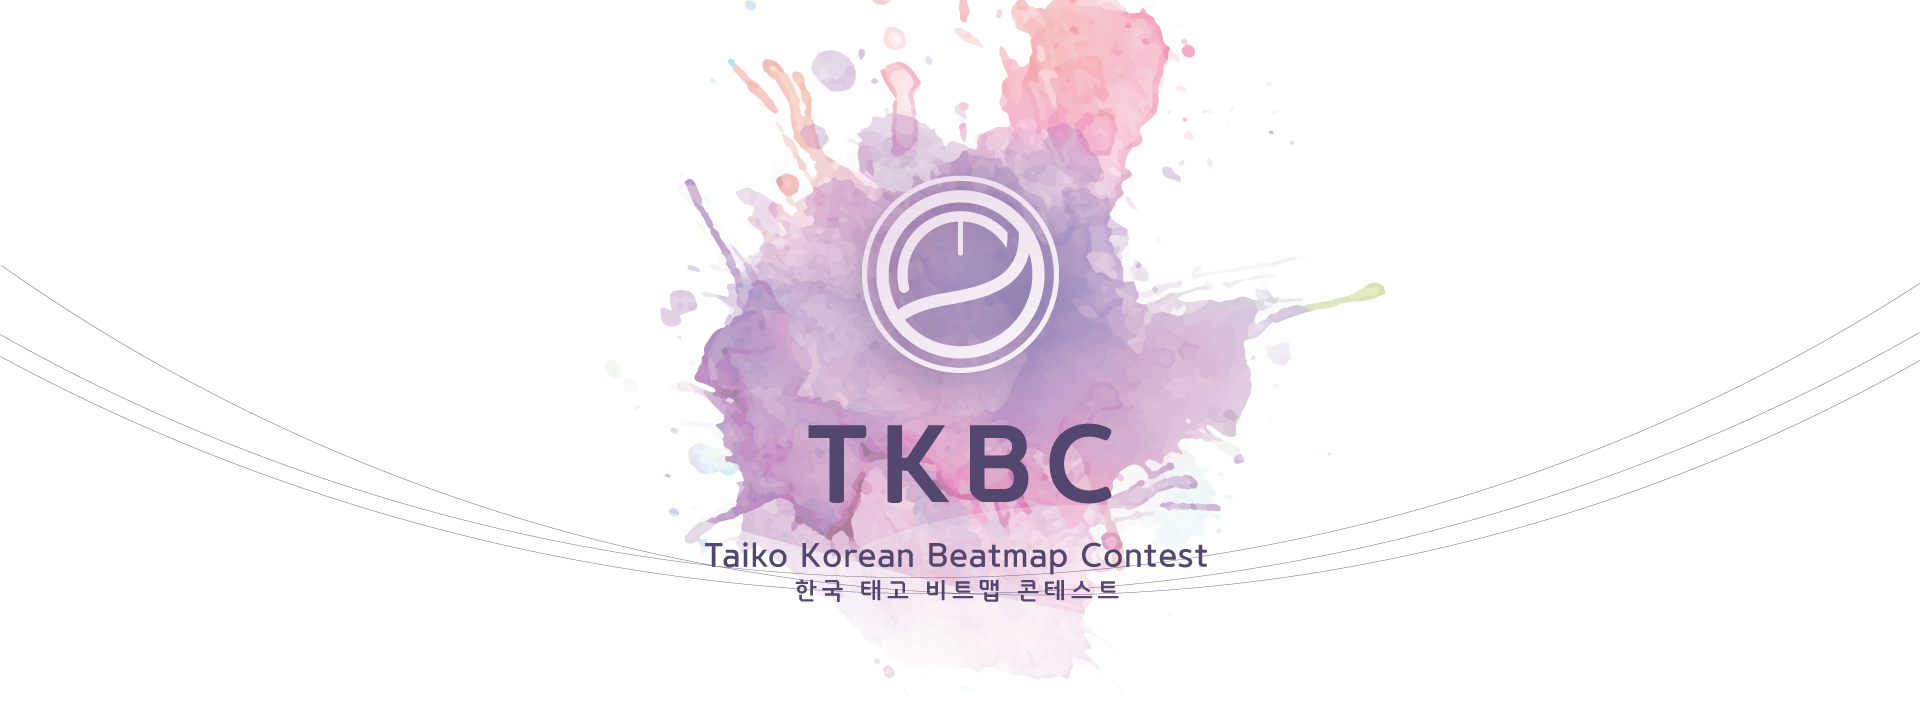 Logo du TKBC1